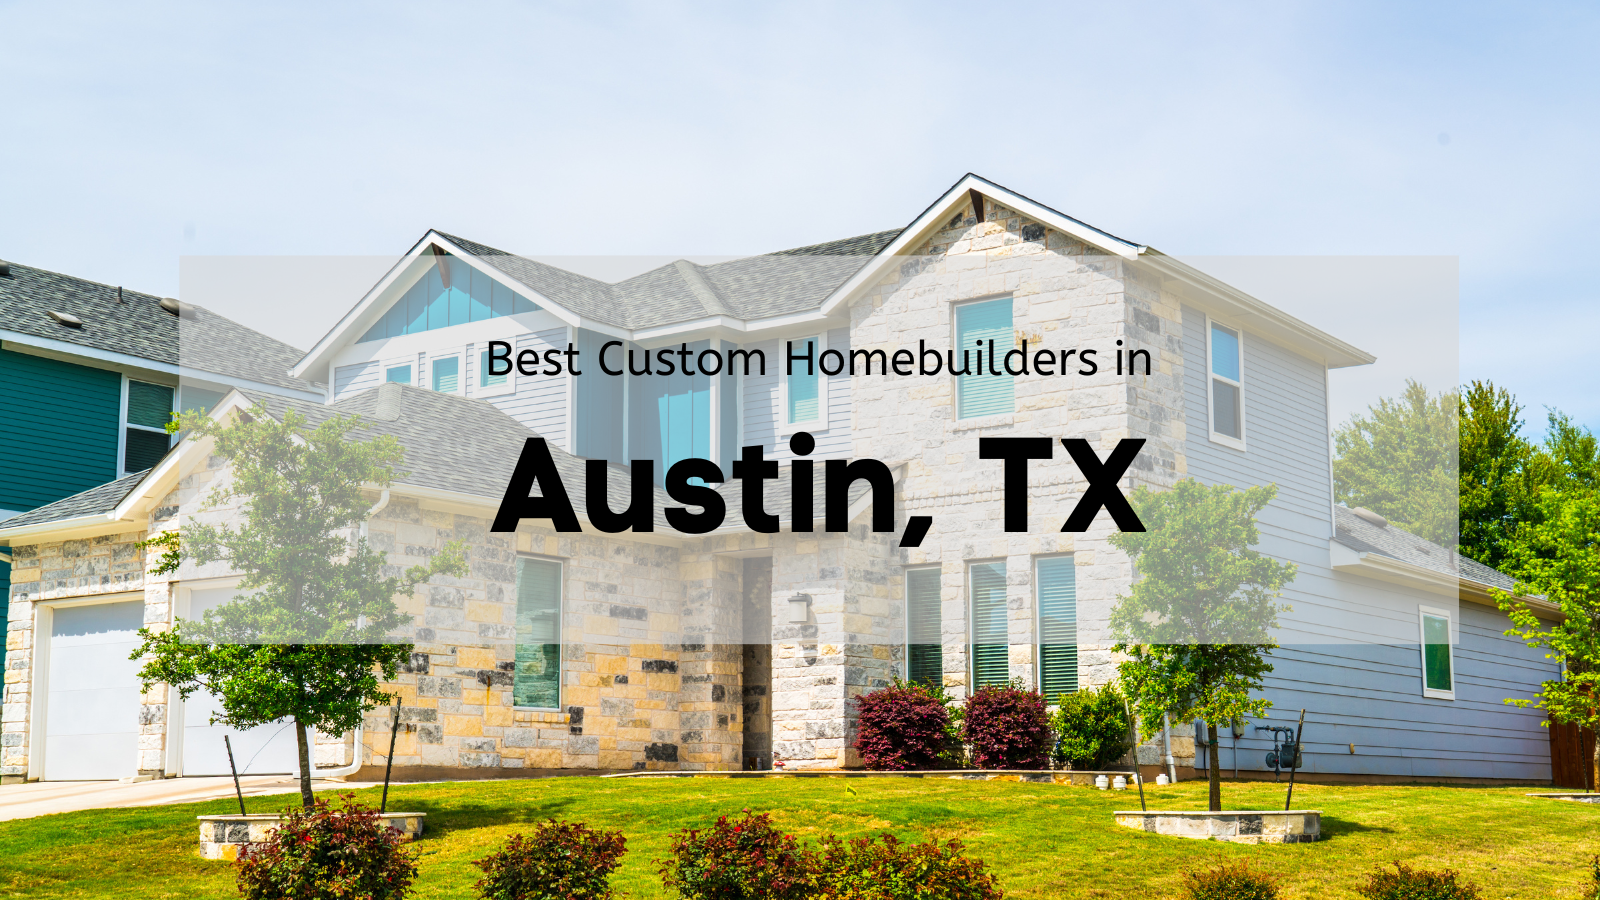 Best Custom Homebuilders in Austin, TX